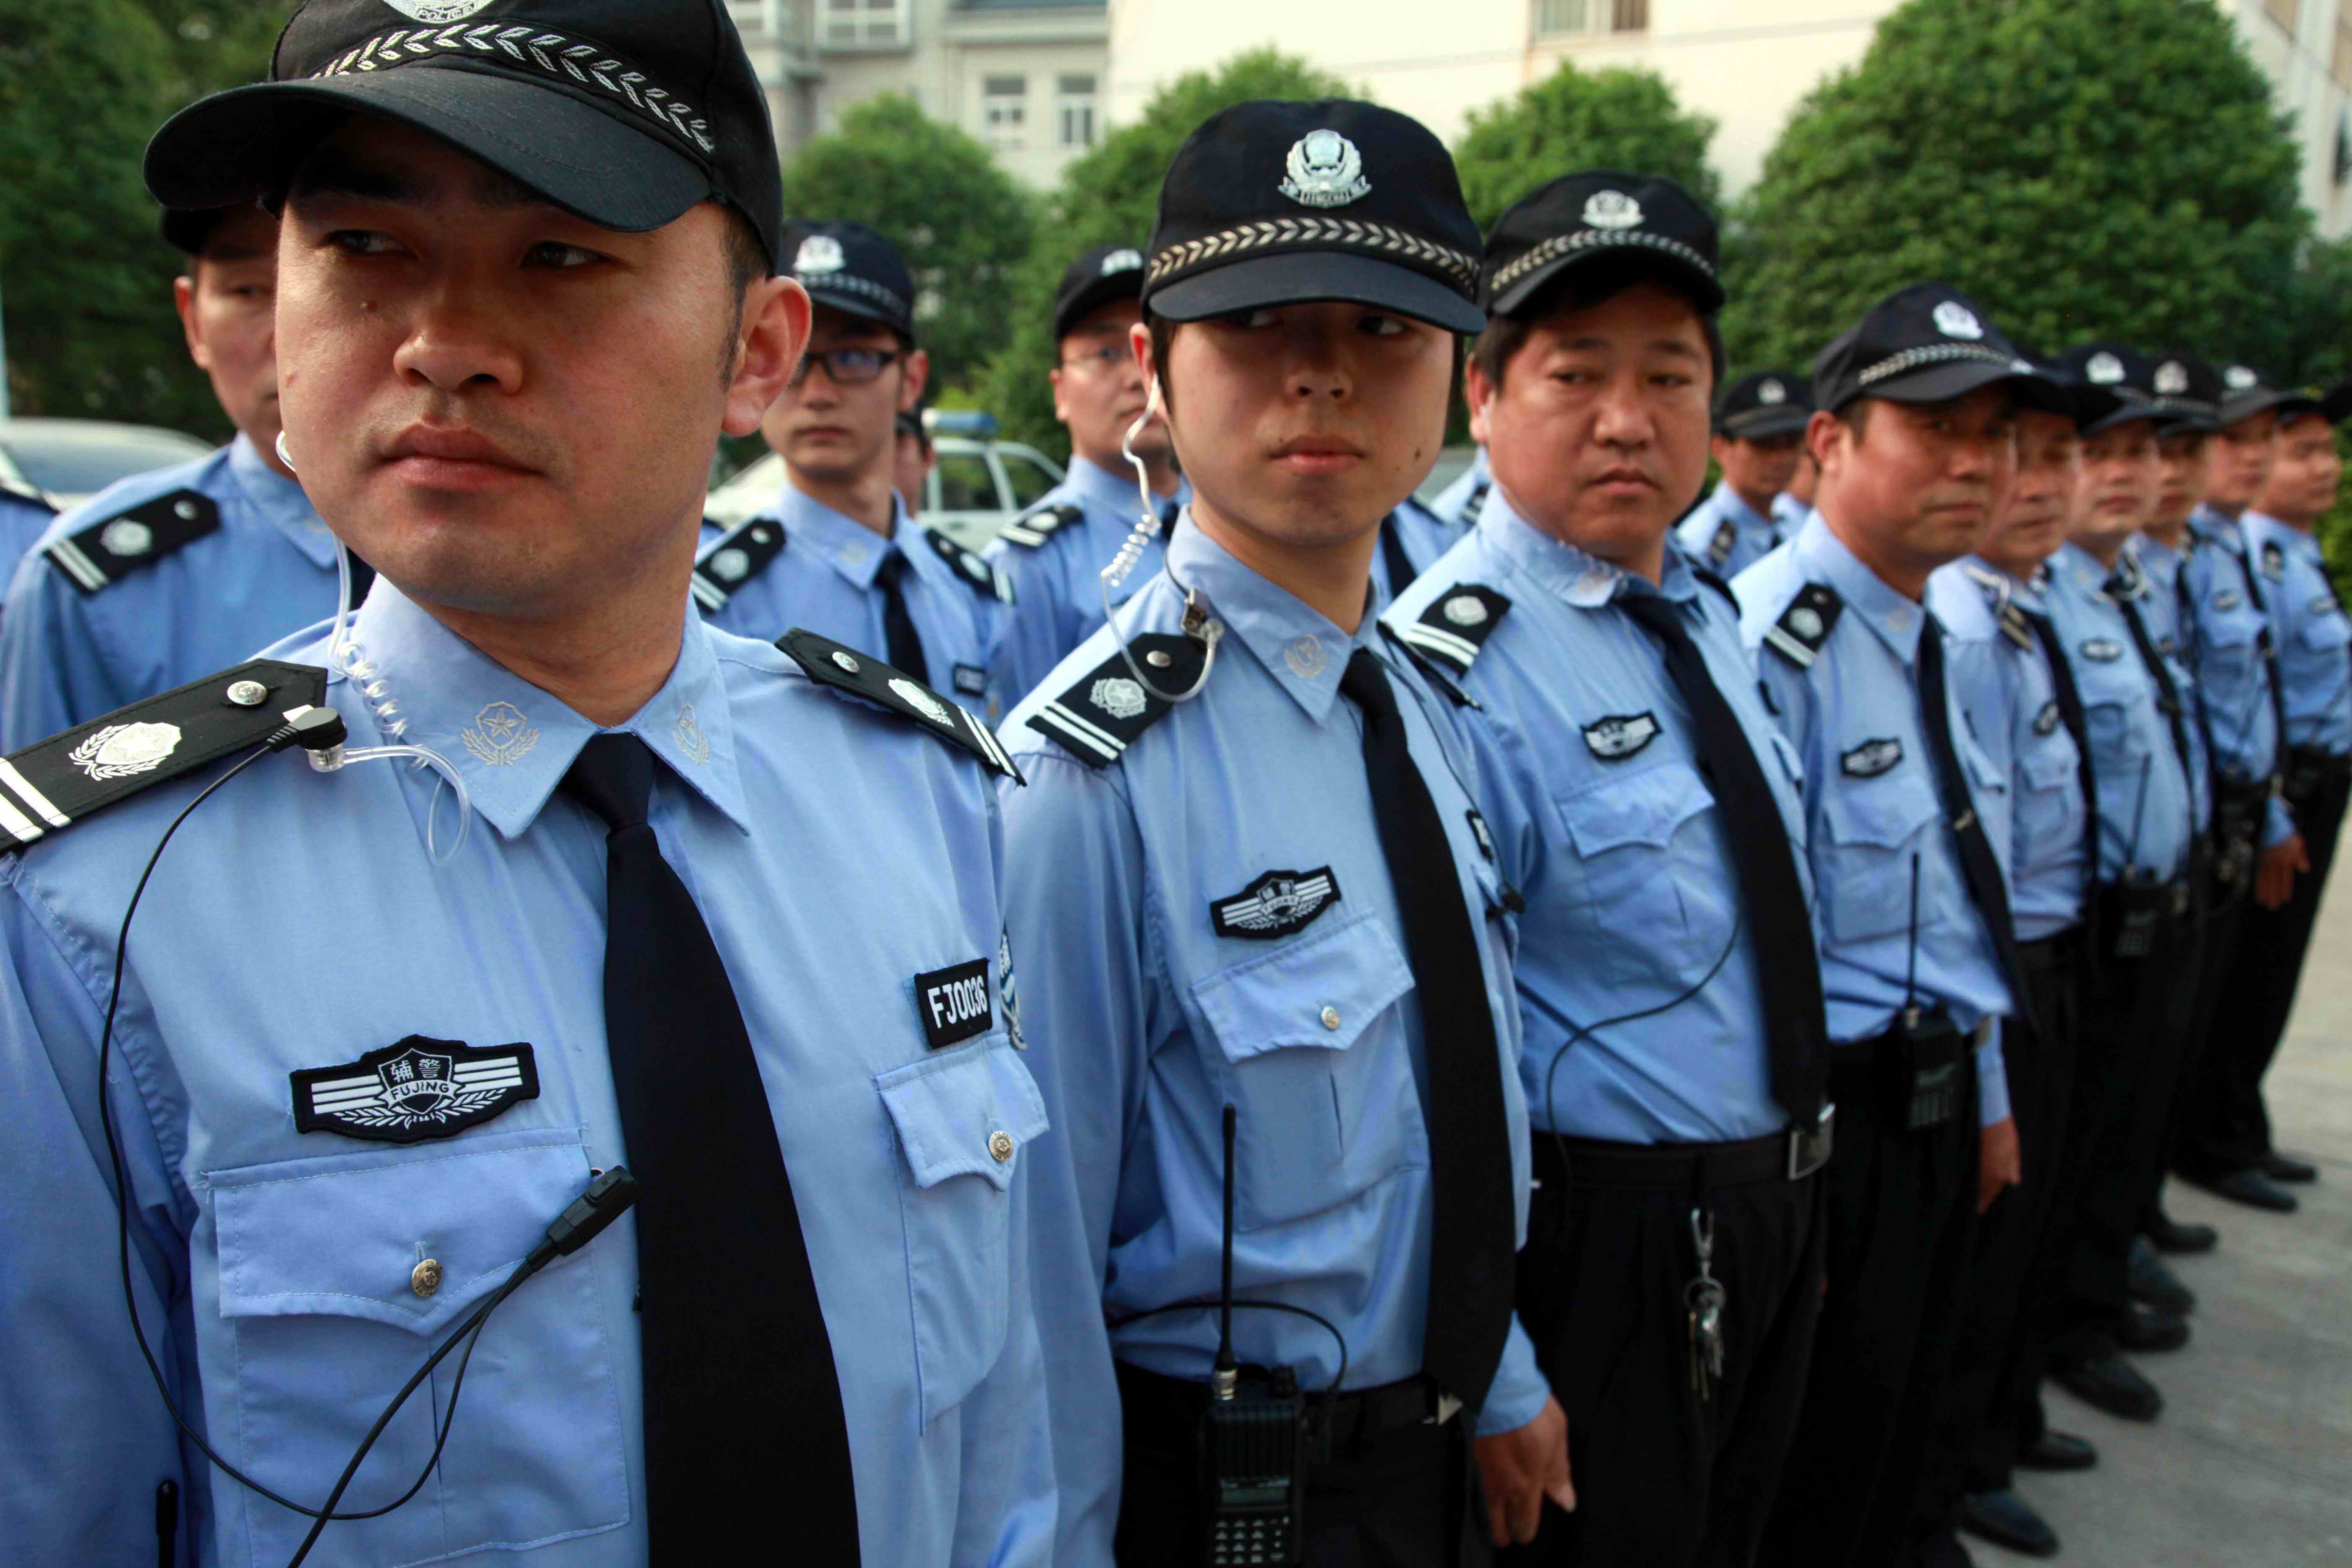 24小时在岗在位—记西安市公安局“优秀女辅警” - 西部网（陕西新闻网）